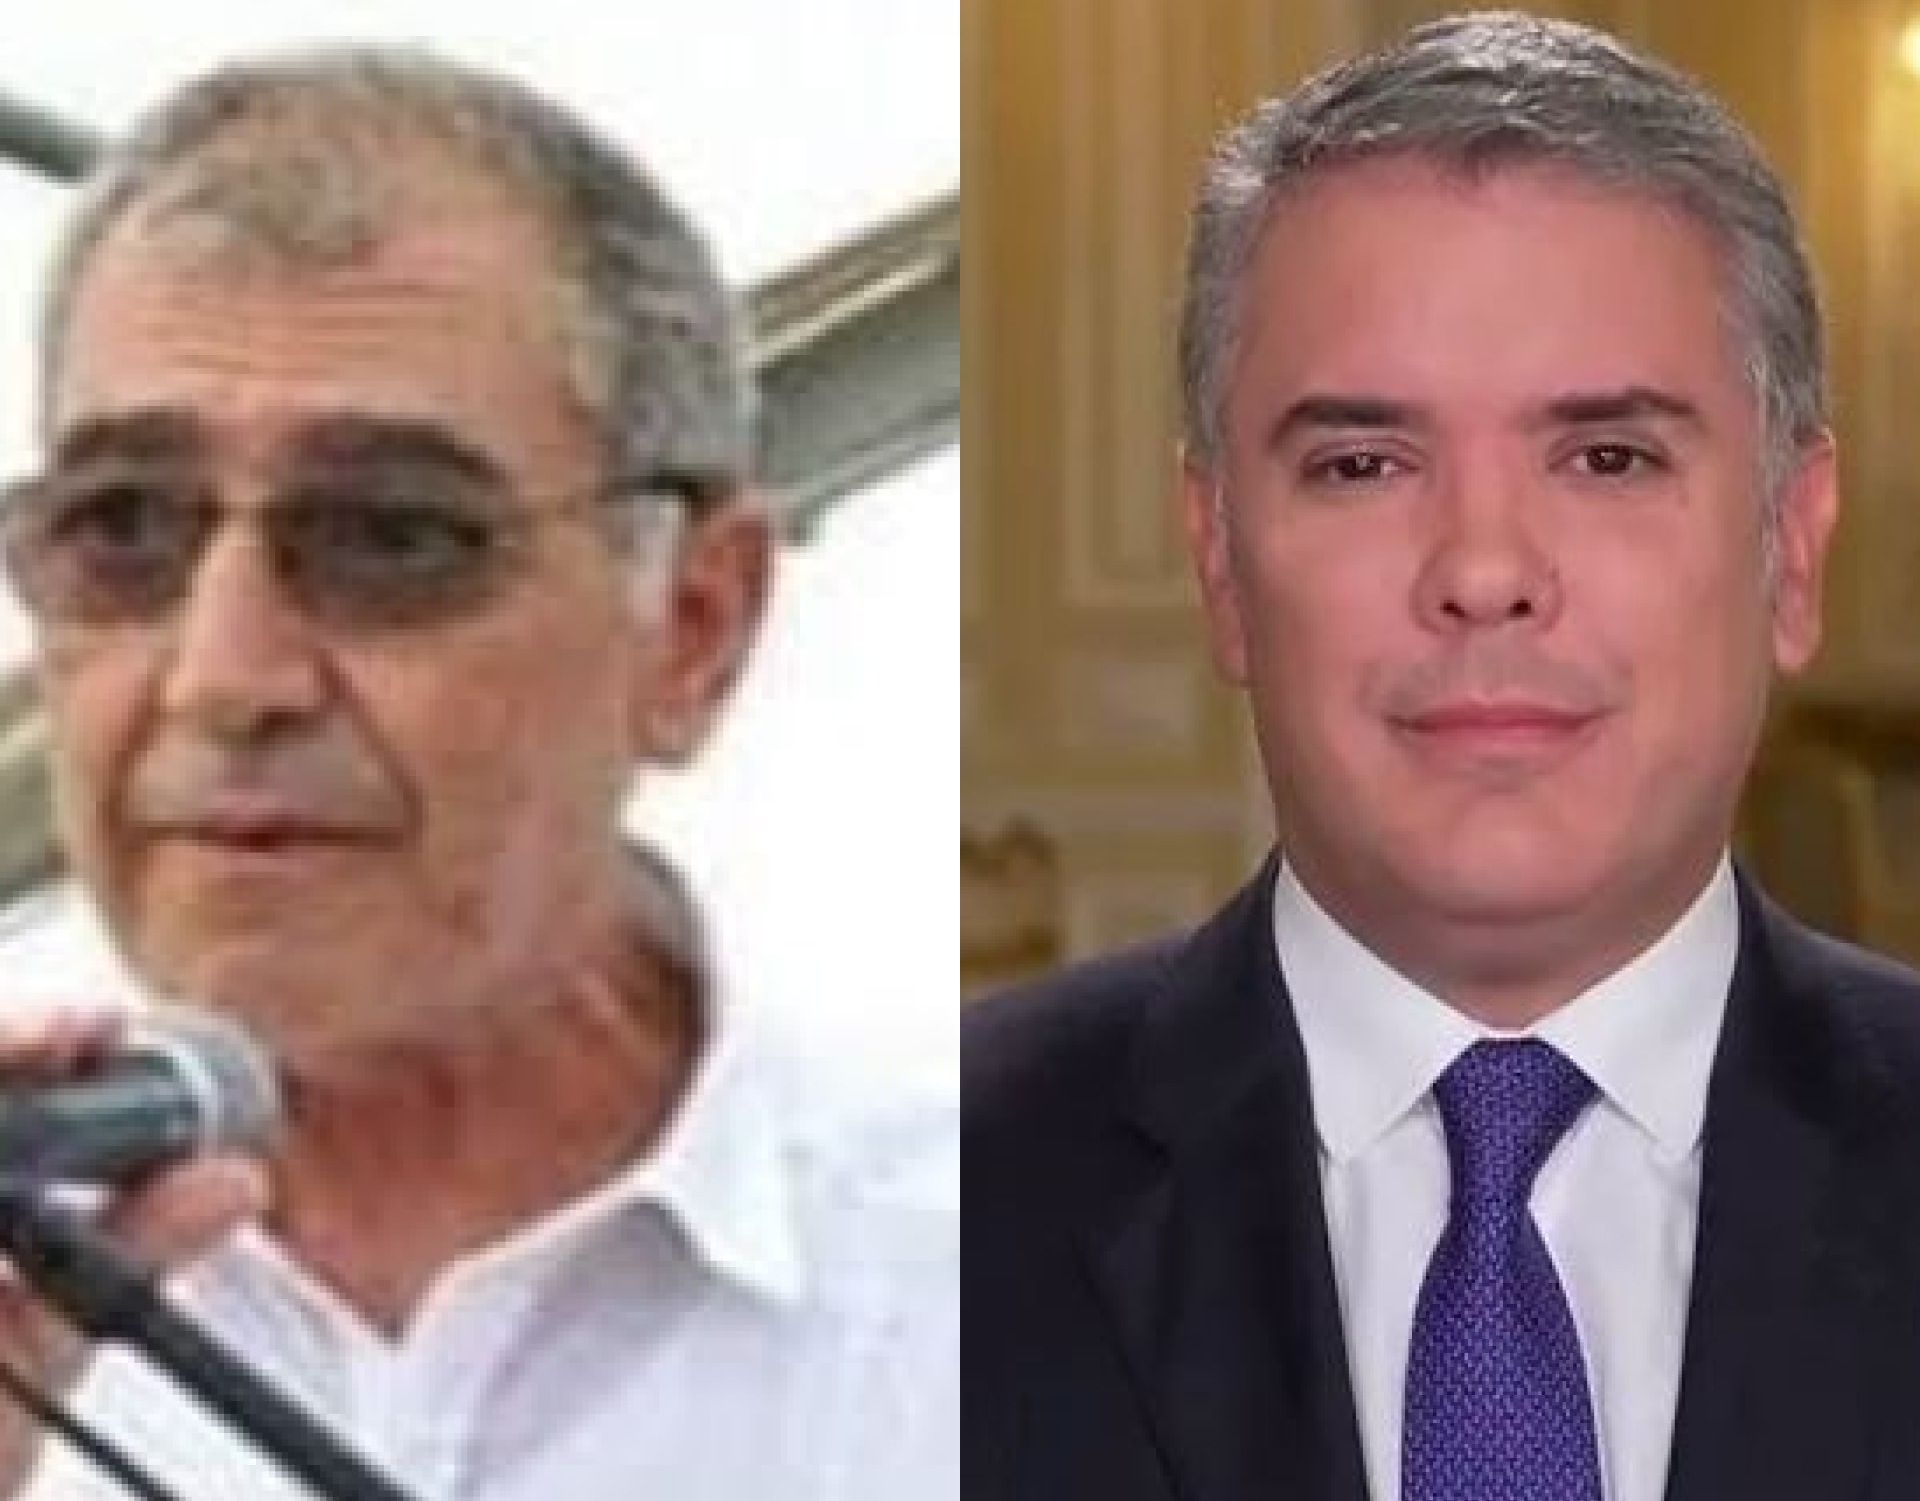 Pareciera que el presidente Duque el director del club de la ineptitud que sostiene al alcalde de Cartagena.